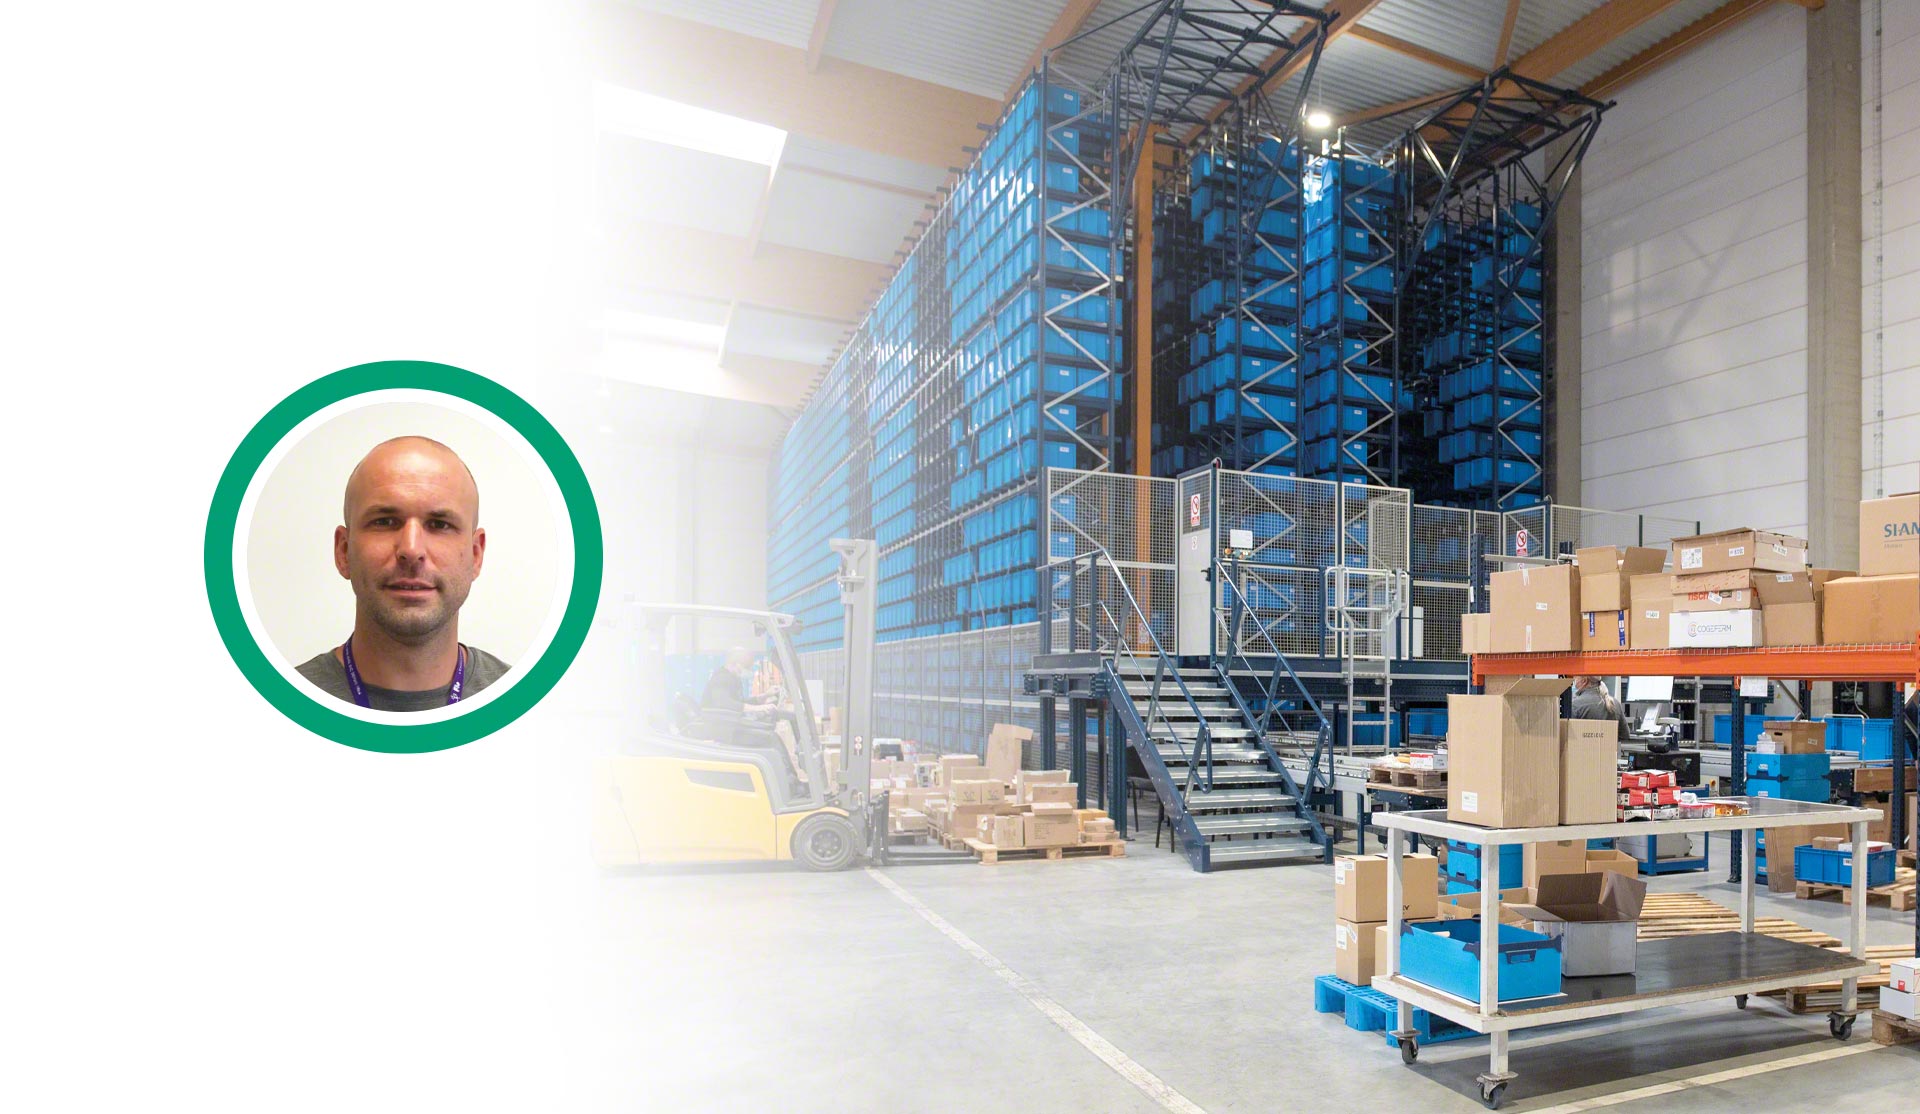 Interview mit Yannick Taton, Leiter der Abteilung Beschaffung, Logistik und Transport bei FIC Pro